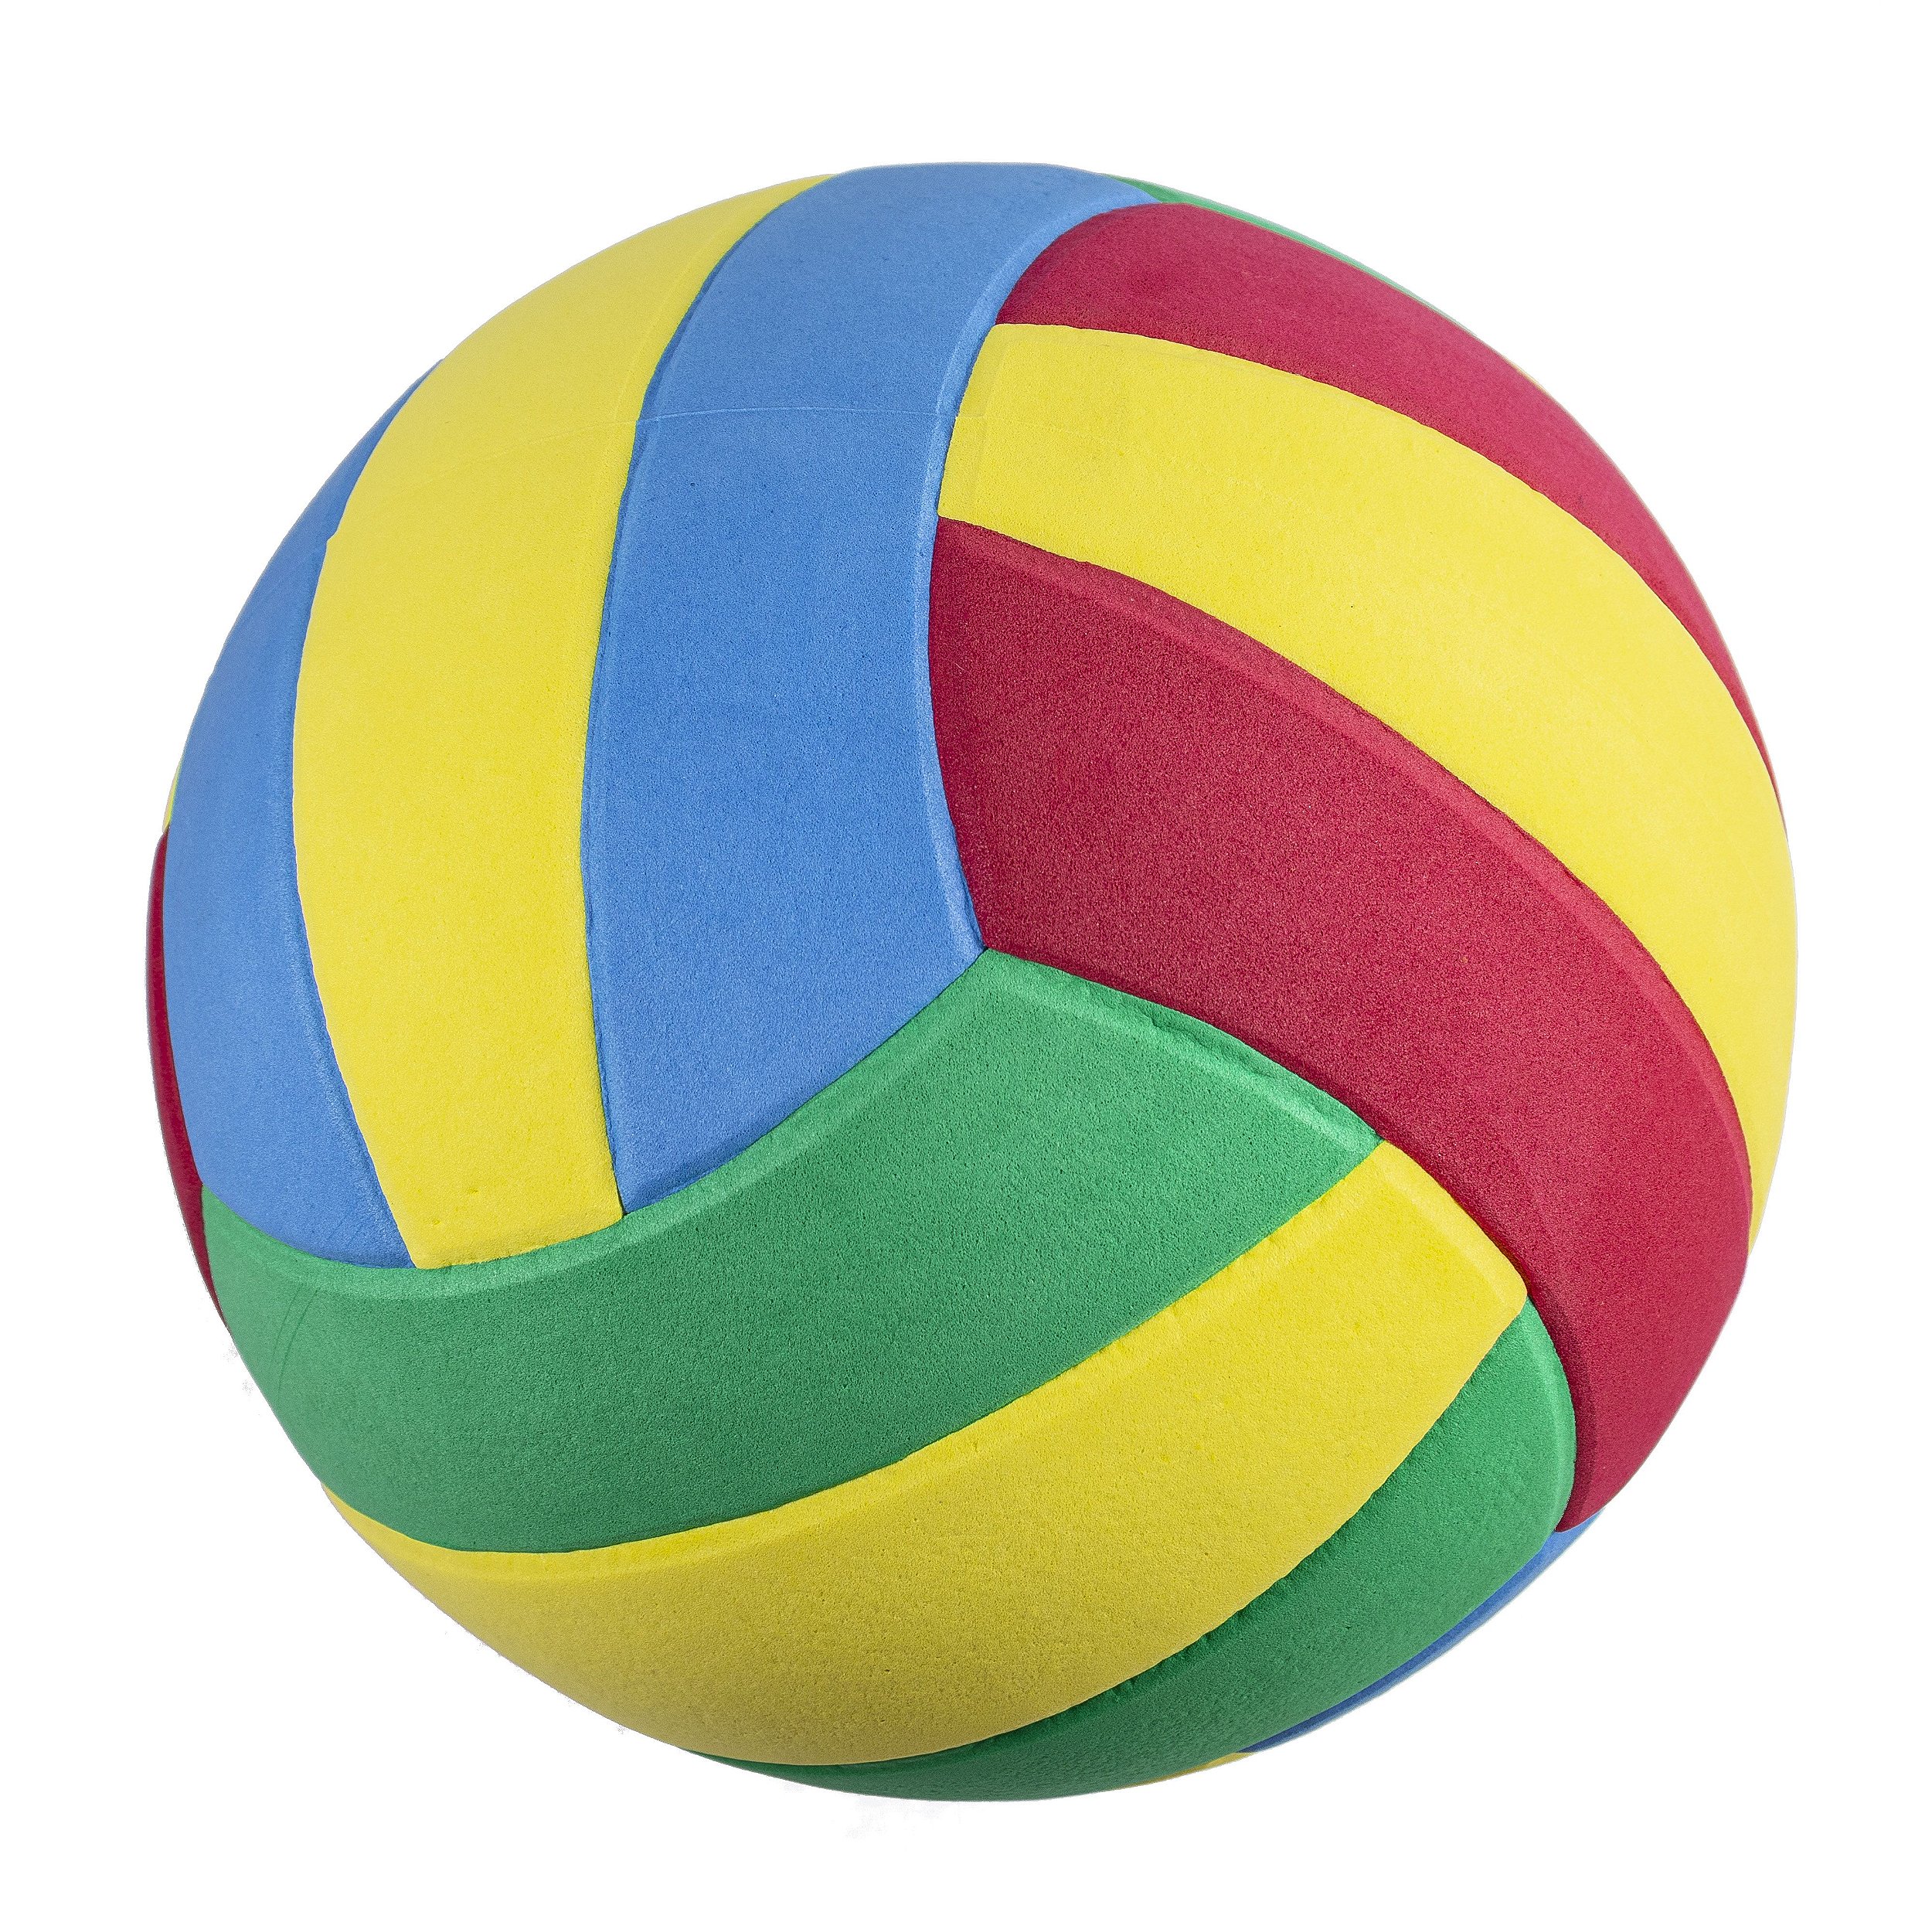 Bola de vôlei Evo Sports EVA - Evo Sports - Artigos Esportivos